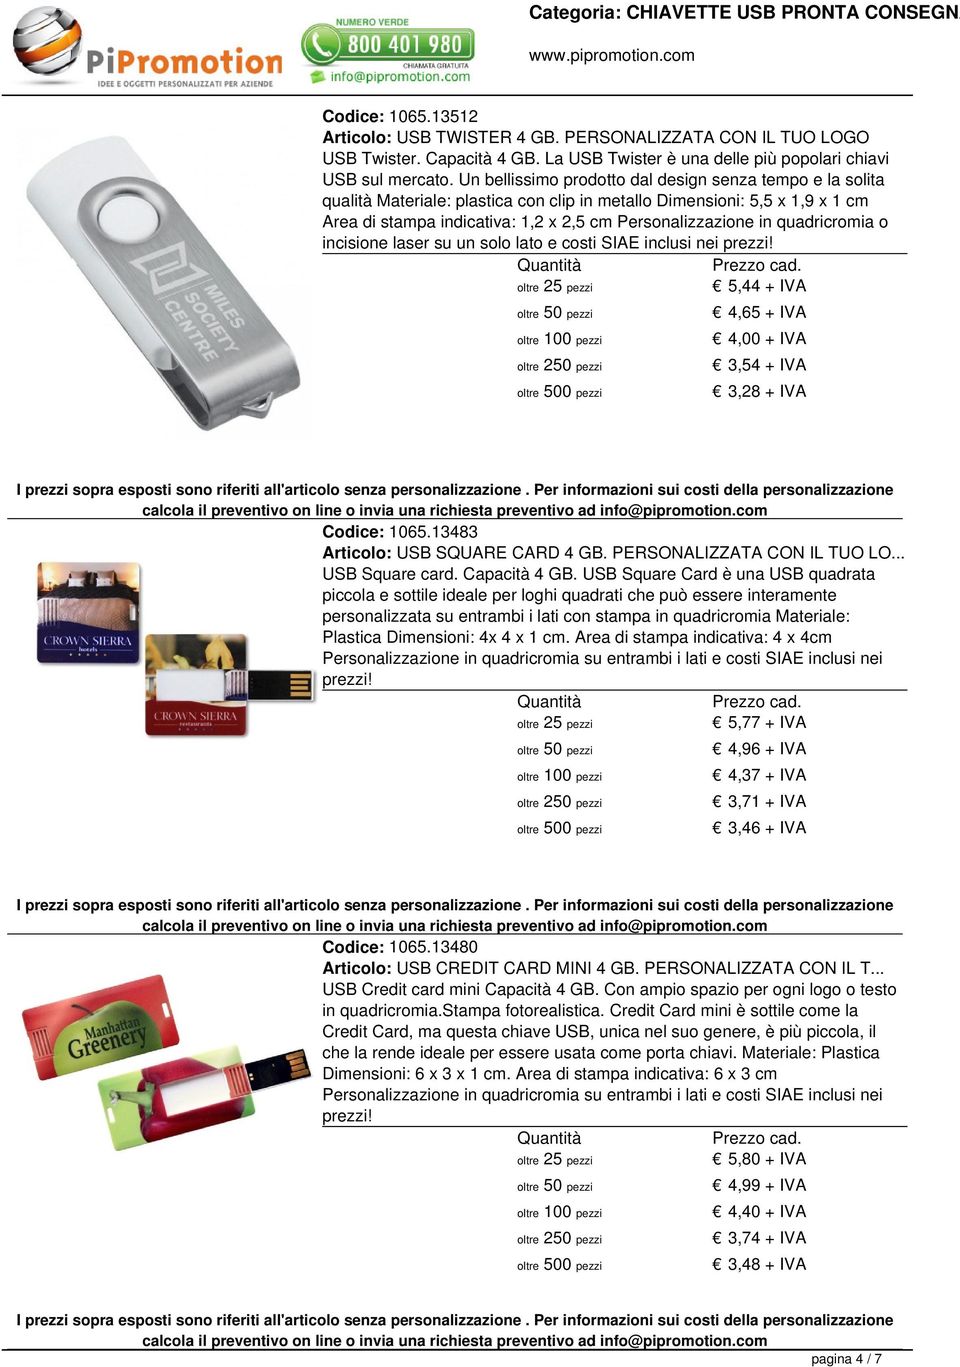 quadricromia o incisione laser su un solo lato e costi 5,44 + IVA 4,65 + IVA 4,00 + IVA 3,54 + IVA 3,28 + IVA Codice: 1065.13483 Articolo: USB SQUARE CARD 4 GB. PERSONALIZZATA CON IL TUO LO.